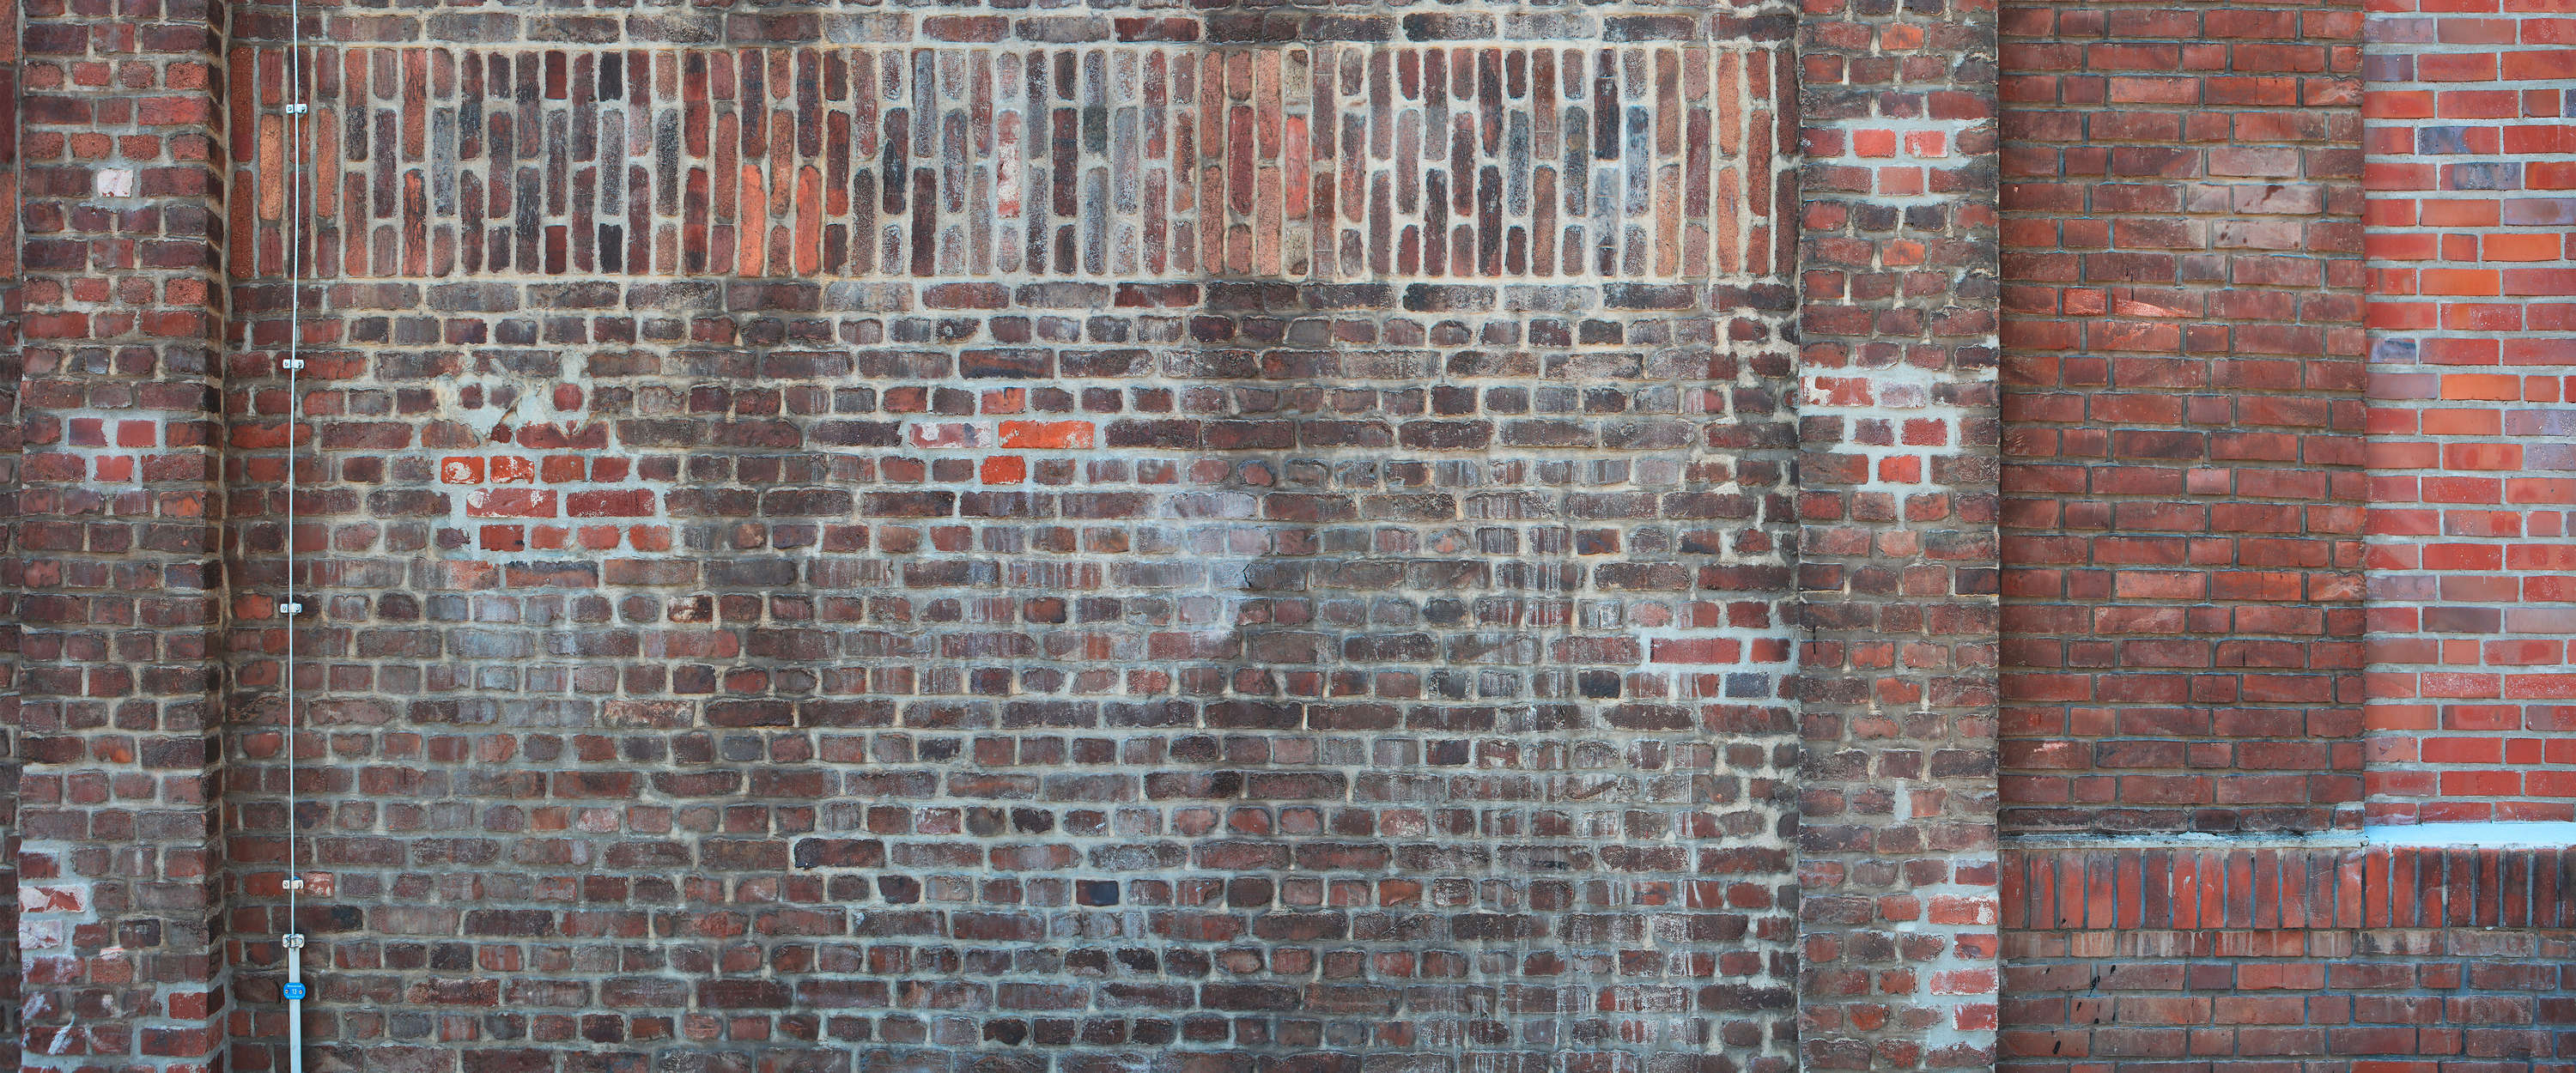             Mural de pared de ladrillo rojo de estilo industrial
        